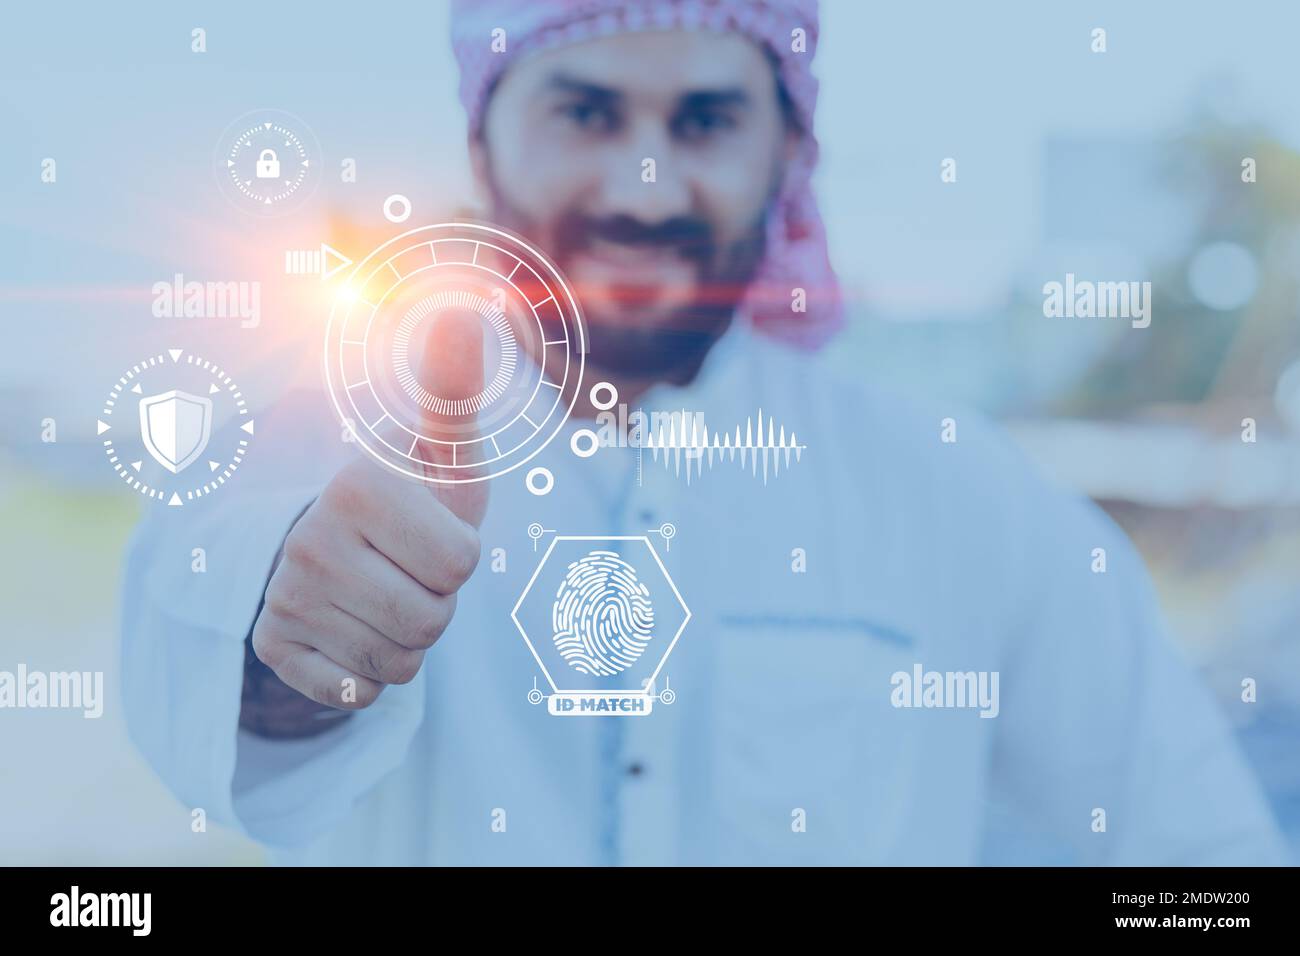 Ein arabischer Mann ist mit der Fingerscan-Technologie für das persönliche Datensicherheitssystem zufrieden Stockfoto